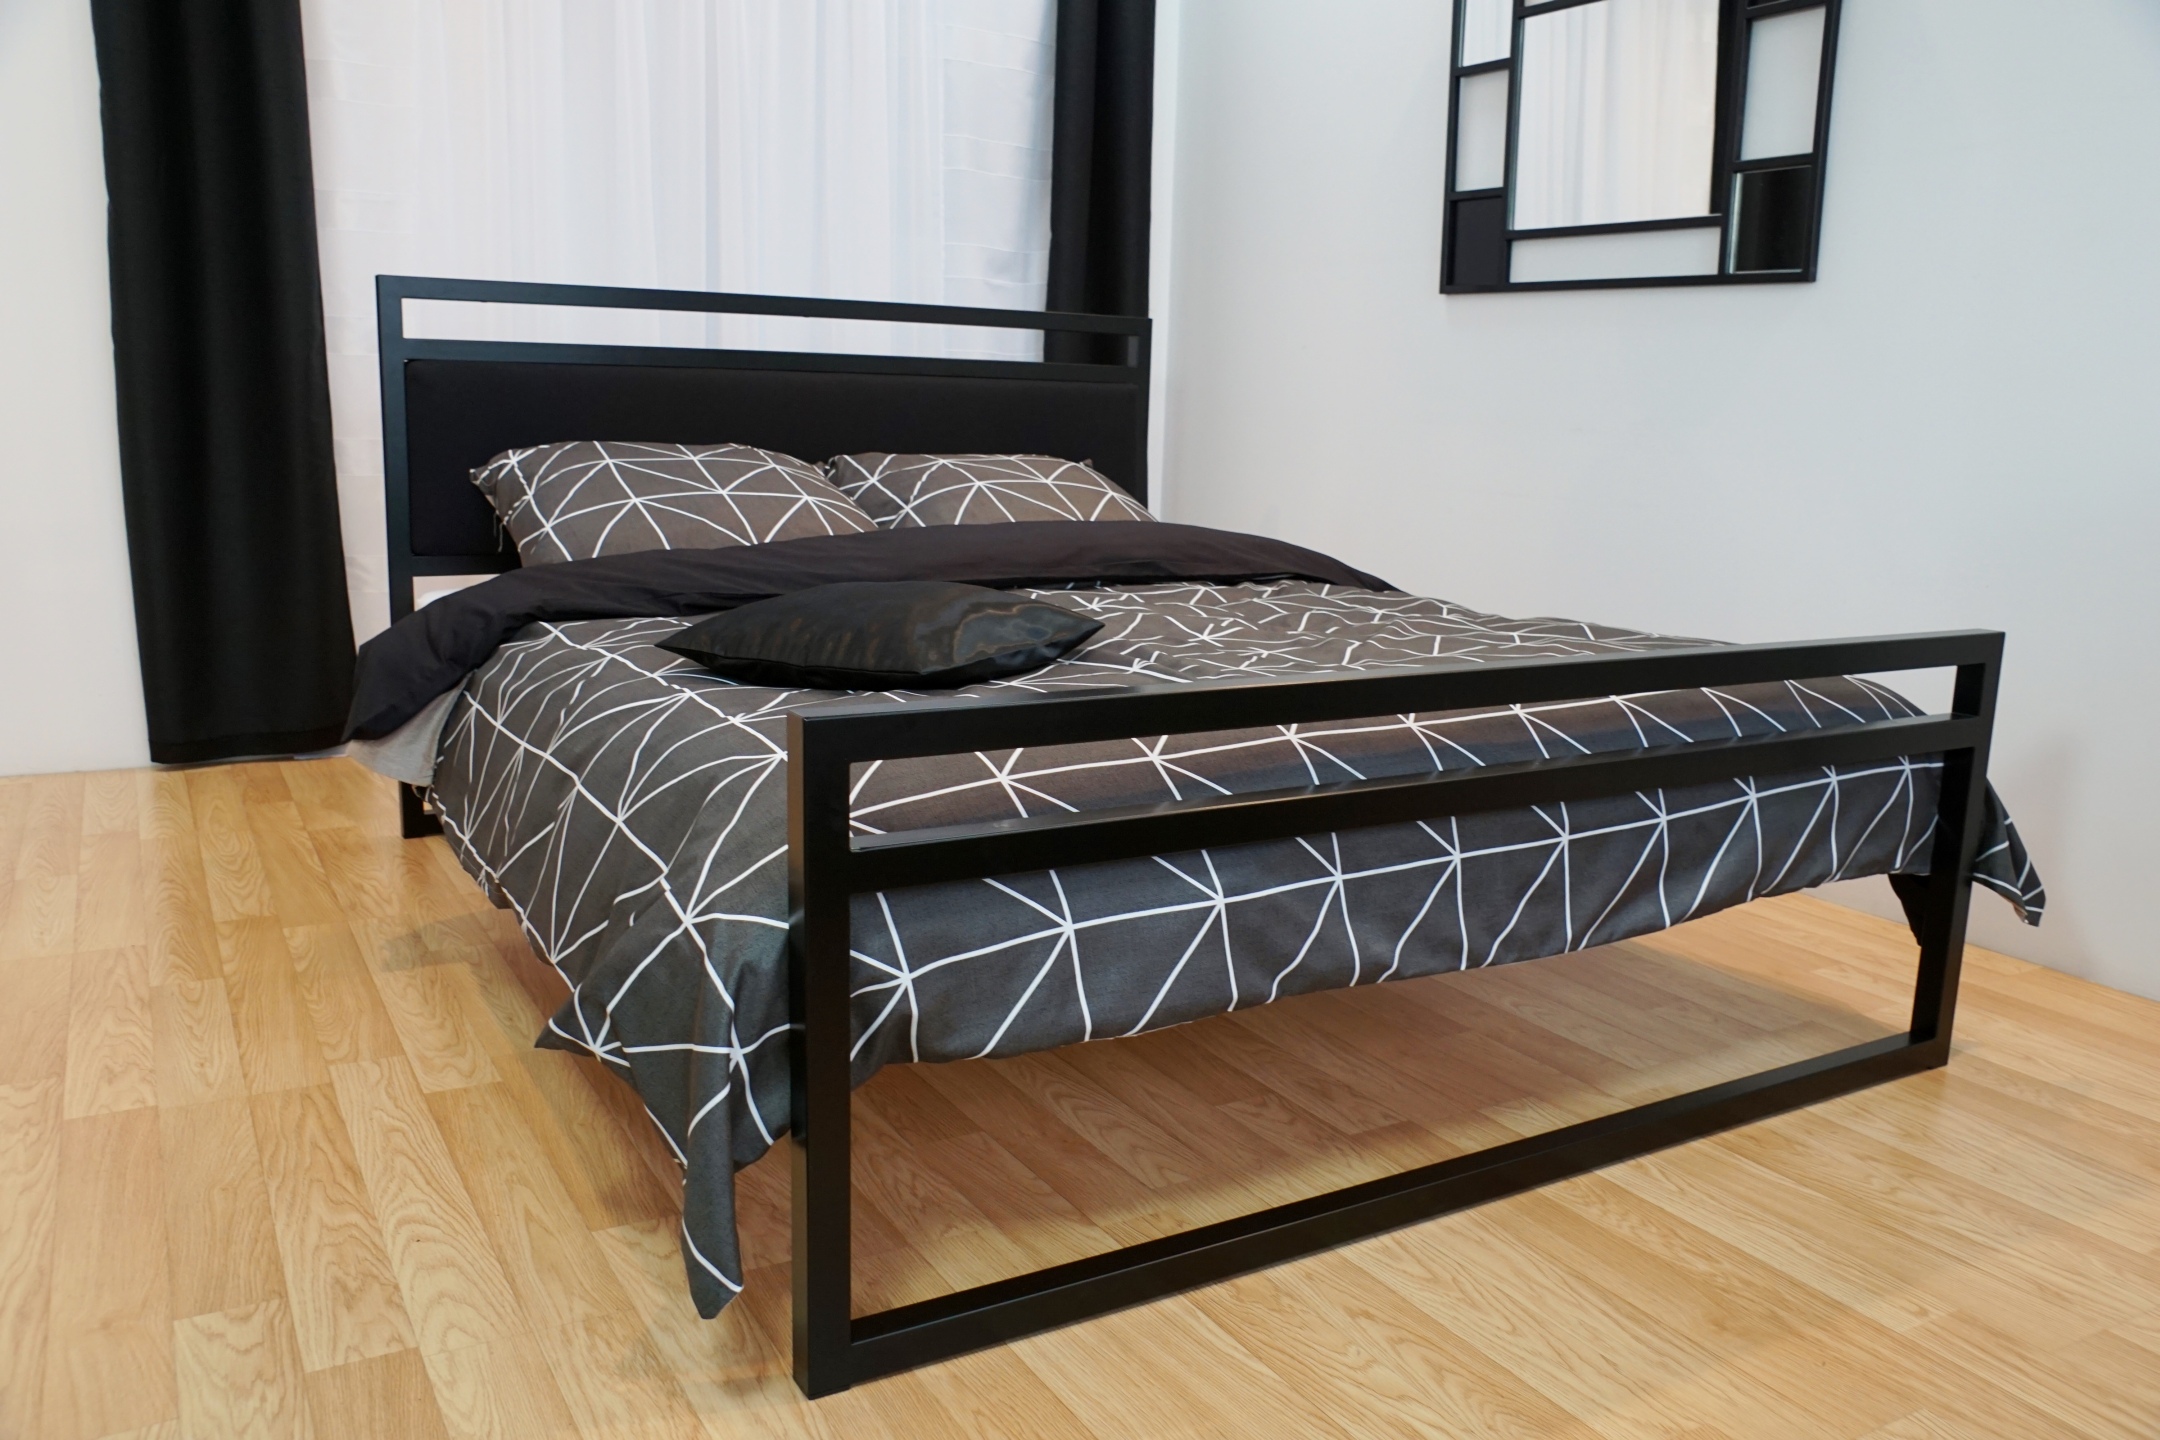 Łóżko loftowe — idealne i wygodne rozwiązanie do nowoczesnej sypialni